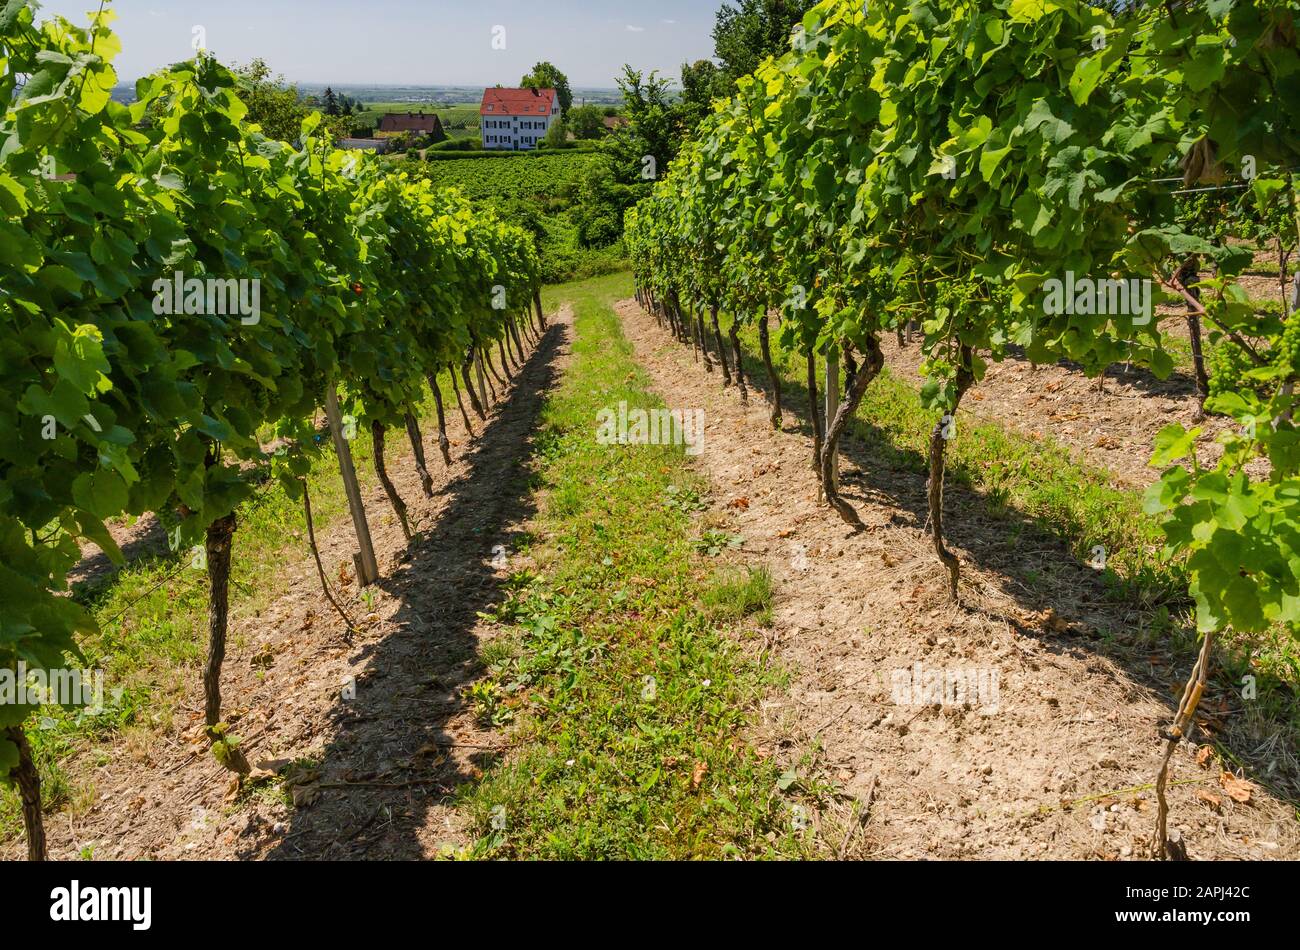 Vineyard in summer, Herxheim am Berg, German Wine Route, Rhineland-Palatinate, Germany Stock Photo